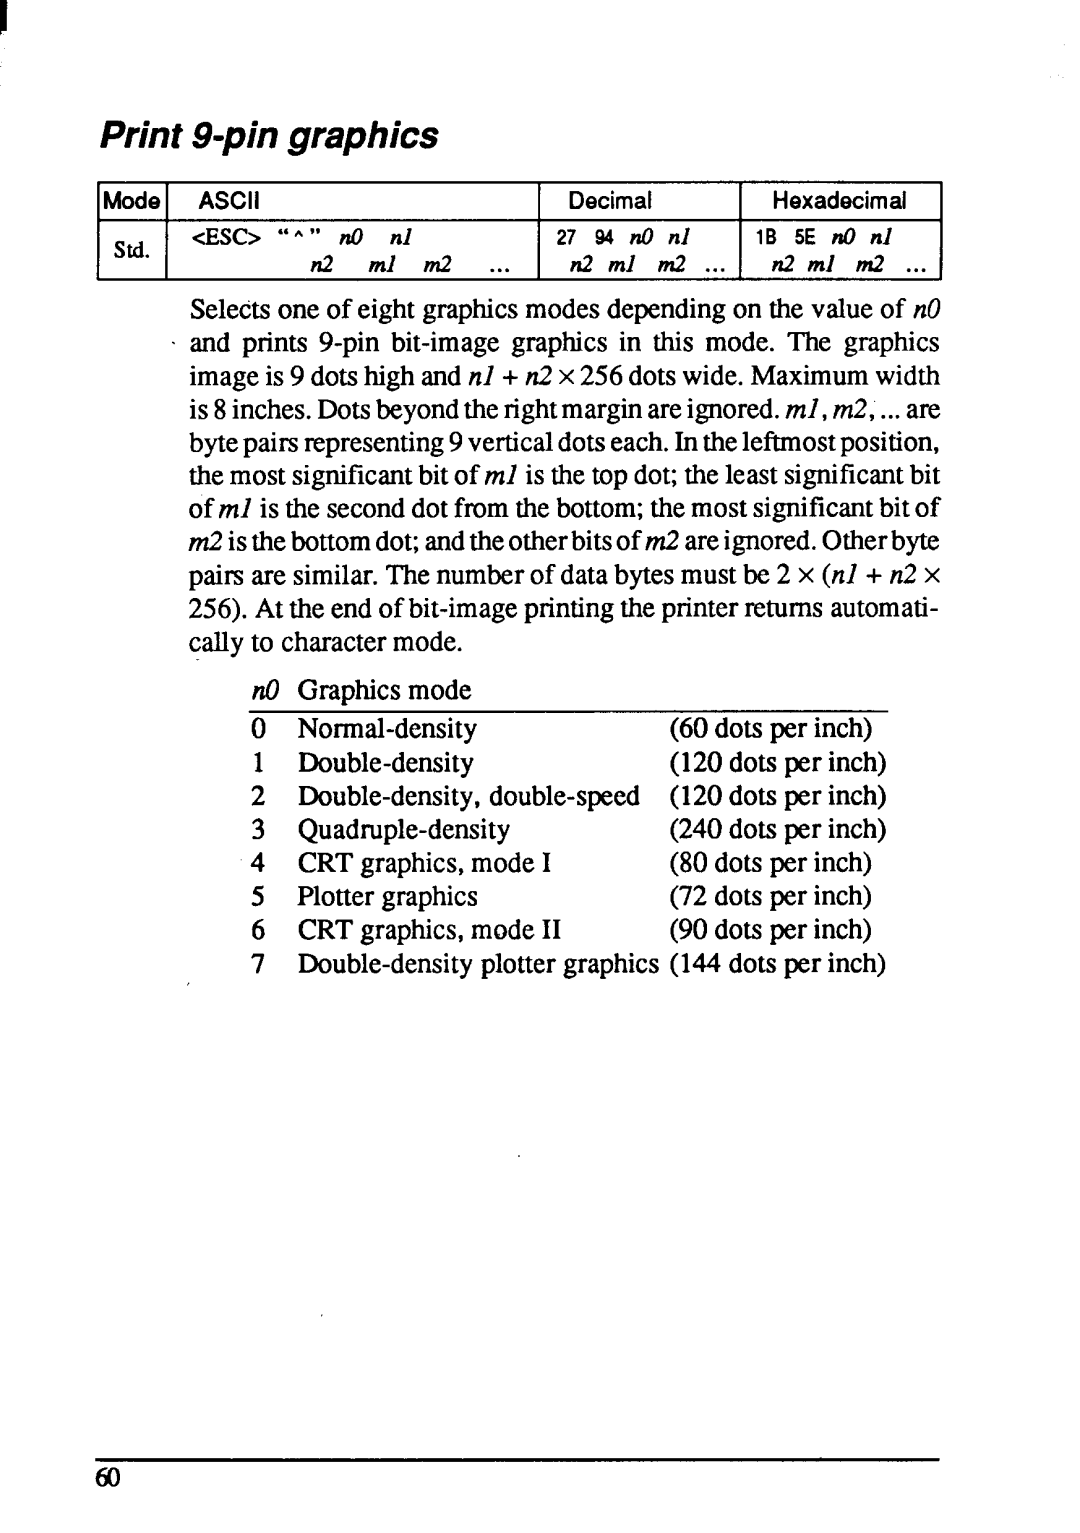 Star Micronics NX-1001 manual 94 ?@ td, n2 ml d 